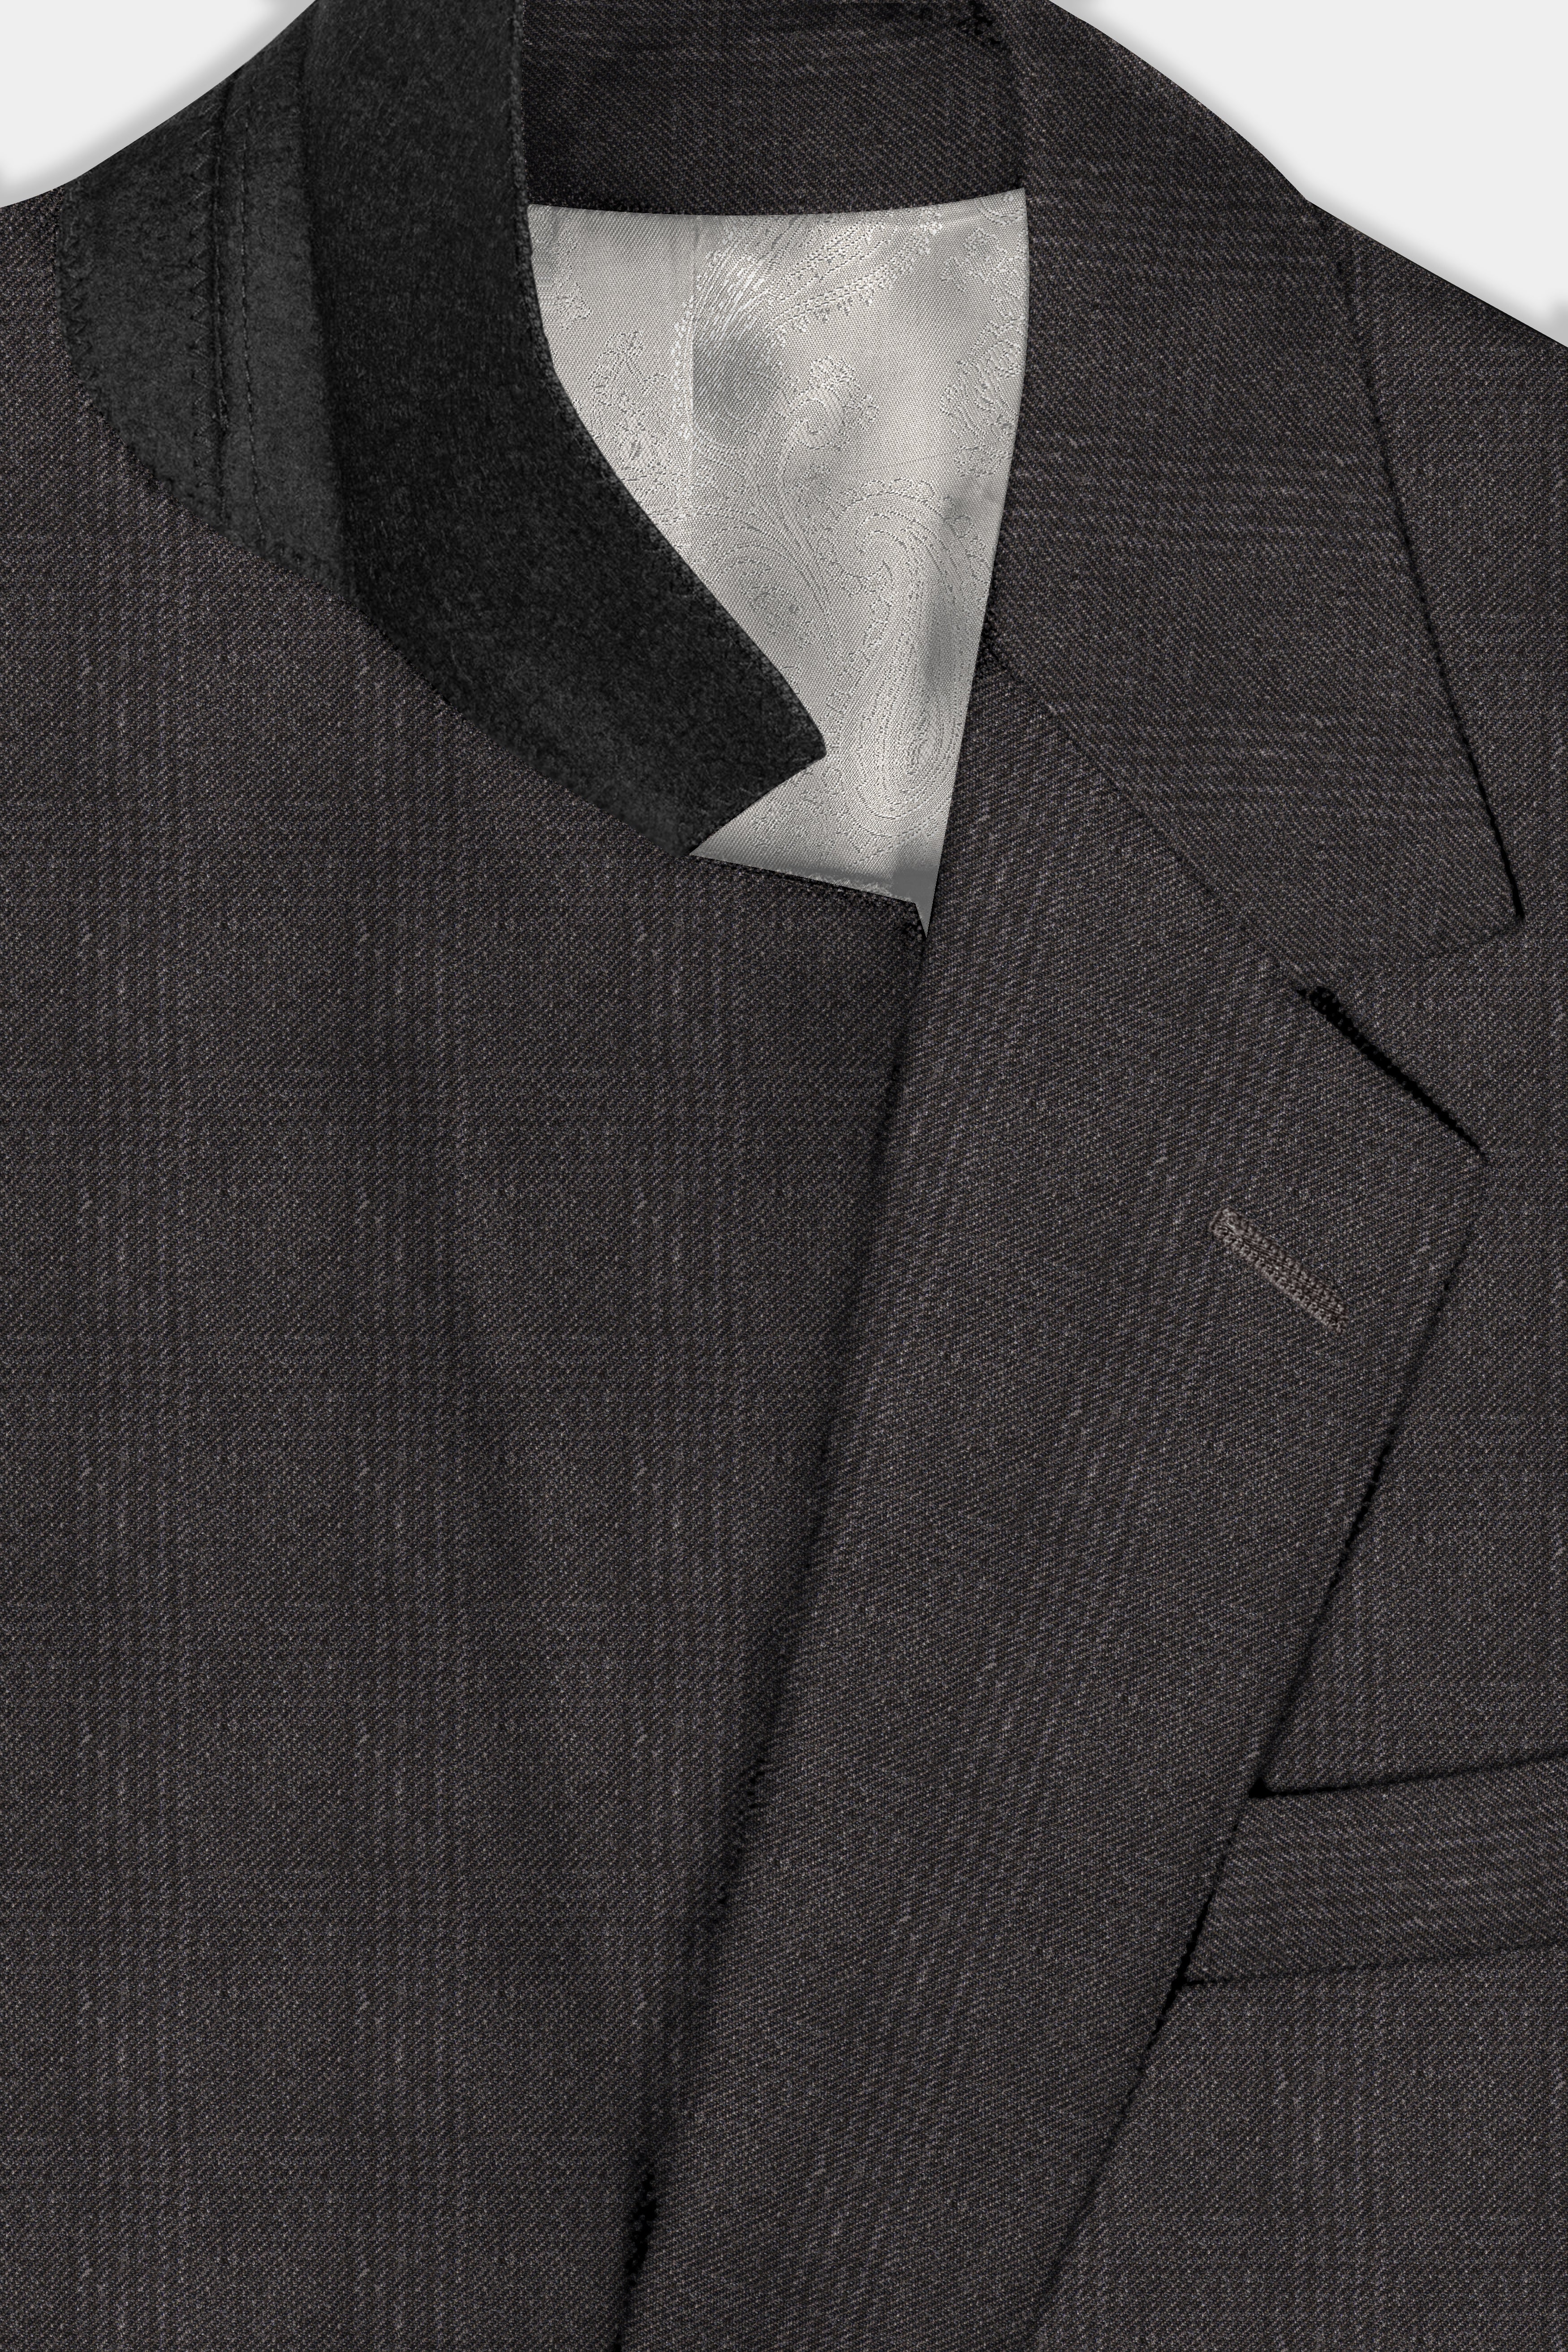 Piano Brown Plaid Tweed Suit